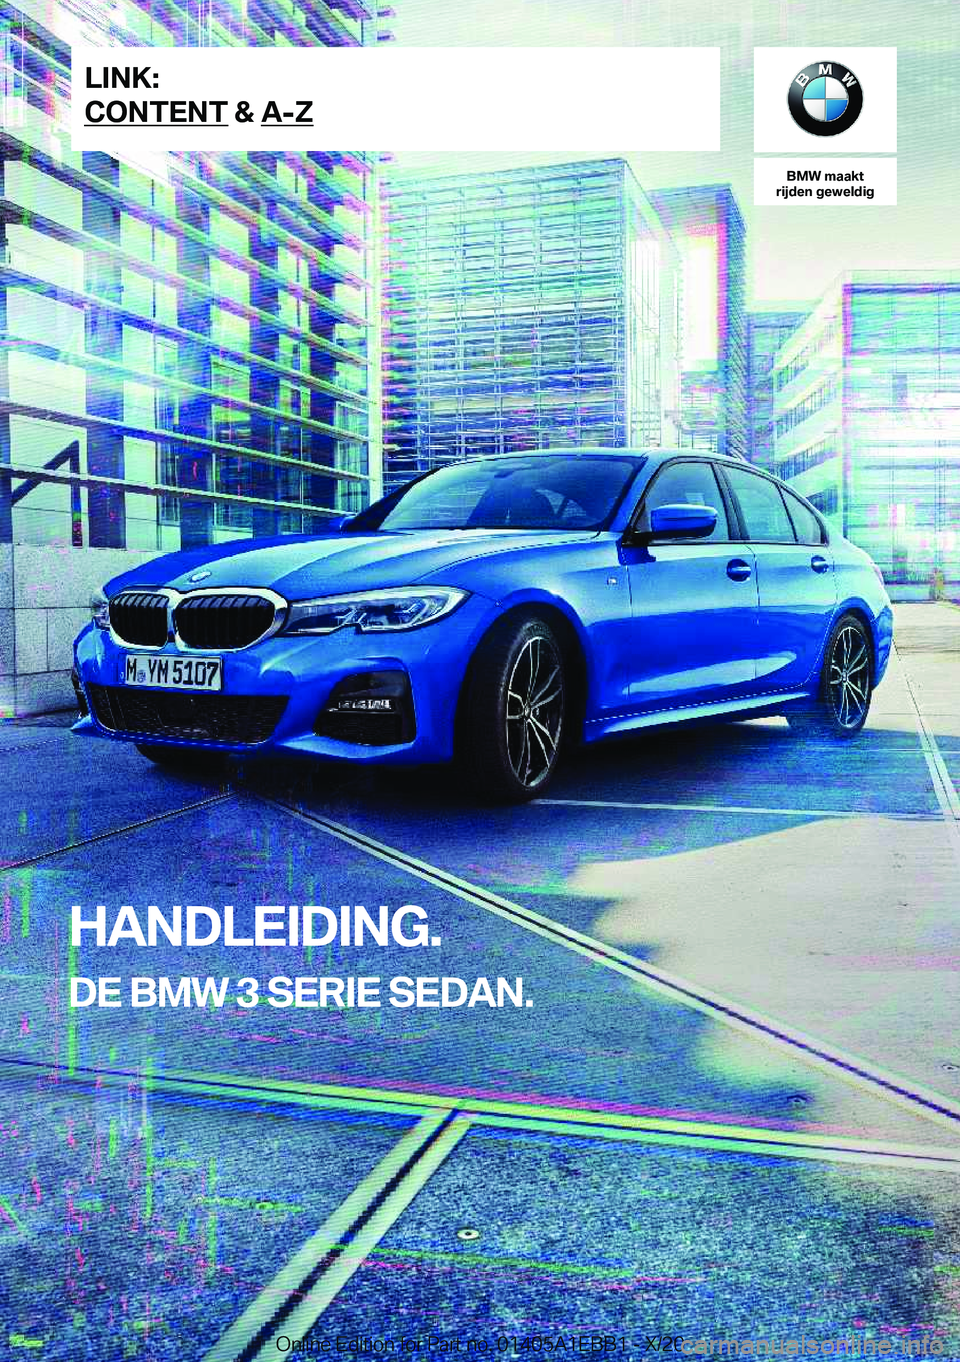 BMW 3 SERIES 2021  Instructieboekjes (in Dutch) �B�M�W��m�a�a�k�t
�r�i�j�d�e�n��g�e�w�e�l�d�i�g
�H�A�N�D�L�E�I�D�I�N�G�.
�D�E��B�M�W��3��S�E�R�I�E��S�E�D�A�N�.�L�I�N�K�:
�C�O�N�T�E�N�T��&��A�-�Z�O�n�l�i�n�e��E�d�i�t�i�o�n��f�o�r��P�a�r�t